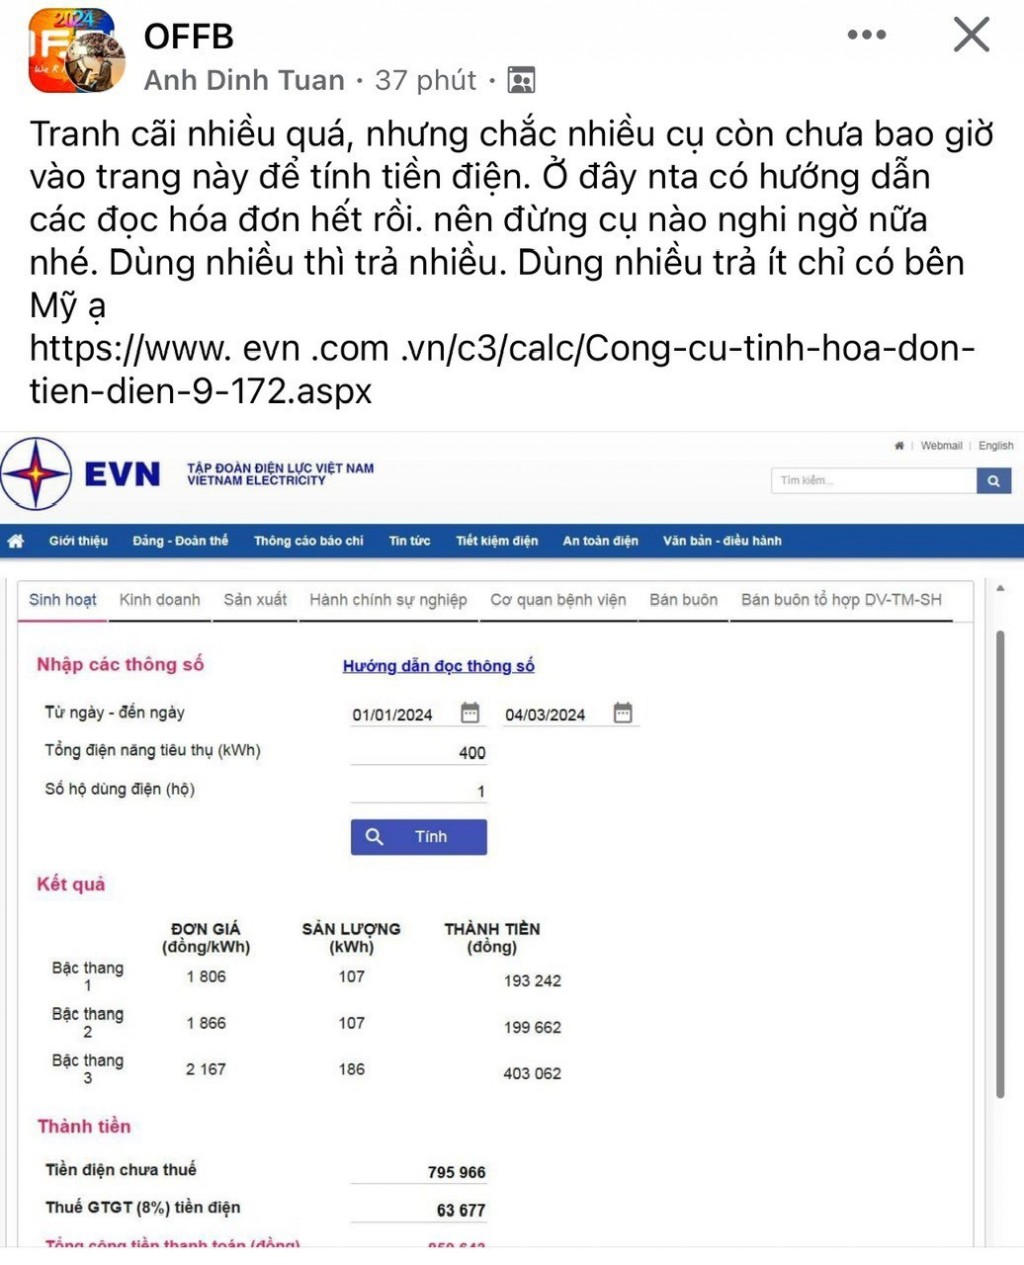 Ý kiến của khách hàng Anh Dinh Tuan khi nhận hóa đơn tiền điện